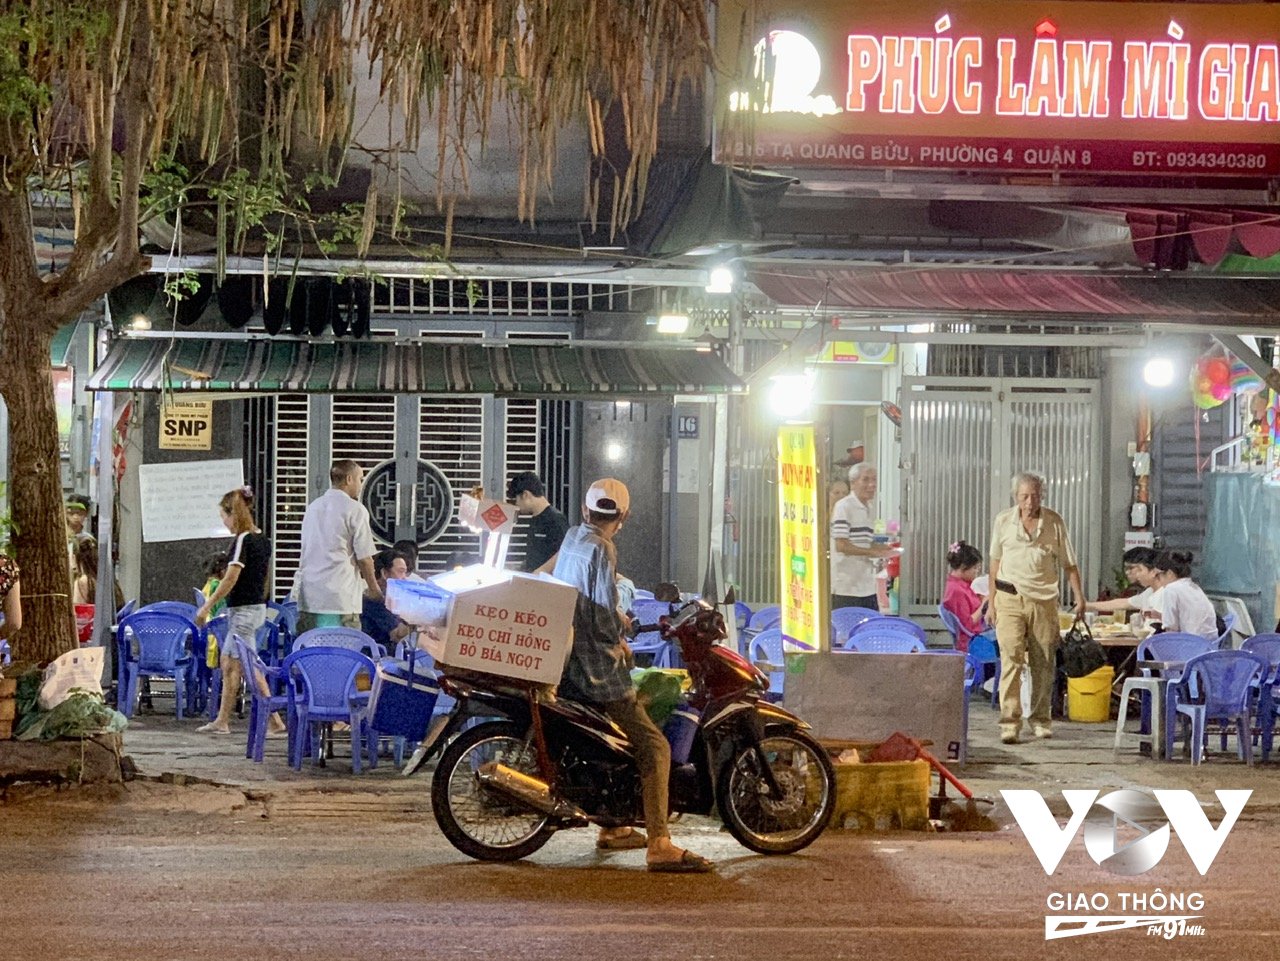 Các loa kẹo kéo phát nhạc ầm ĩ trước các hàng quán trên đường Tạ Quang Bửu quận 8